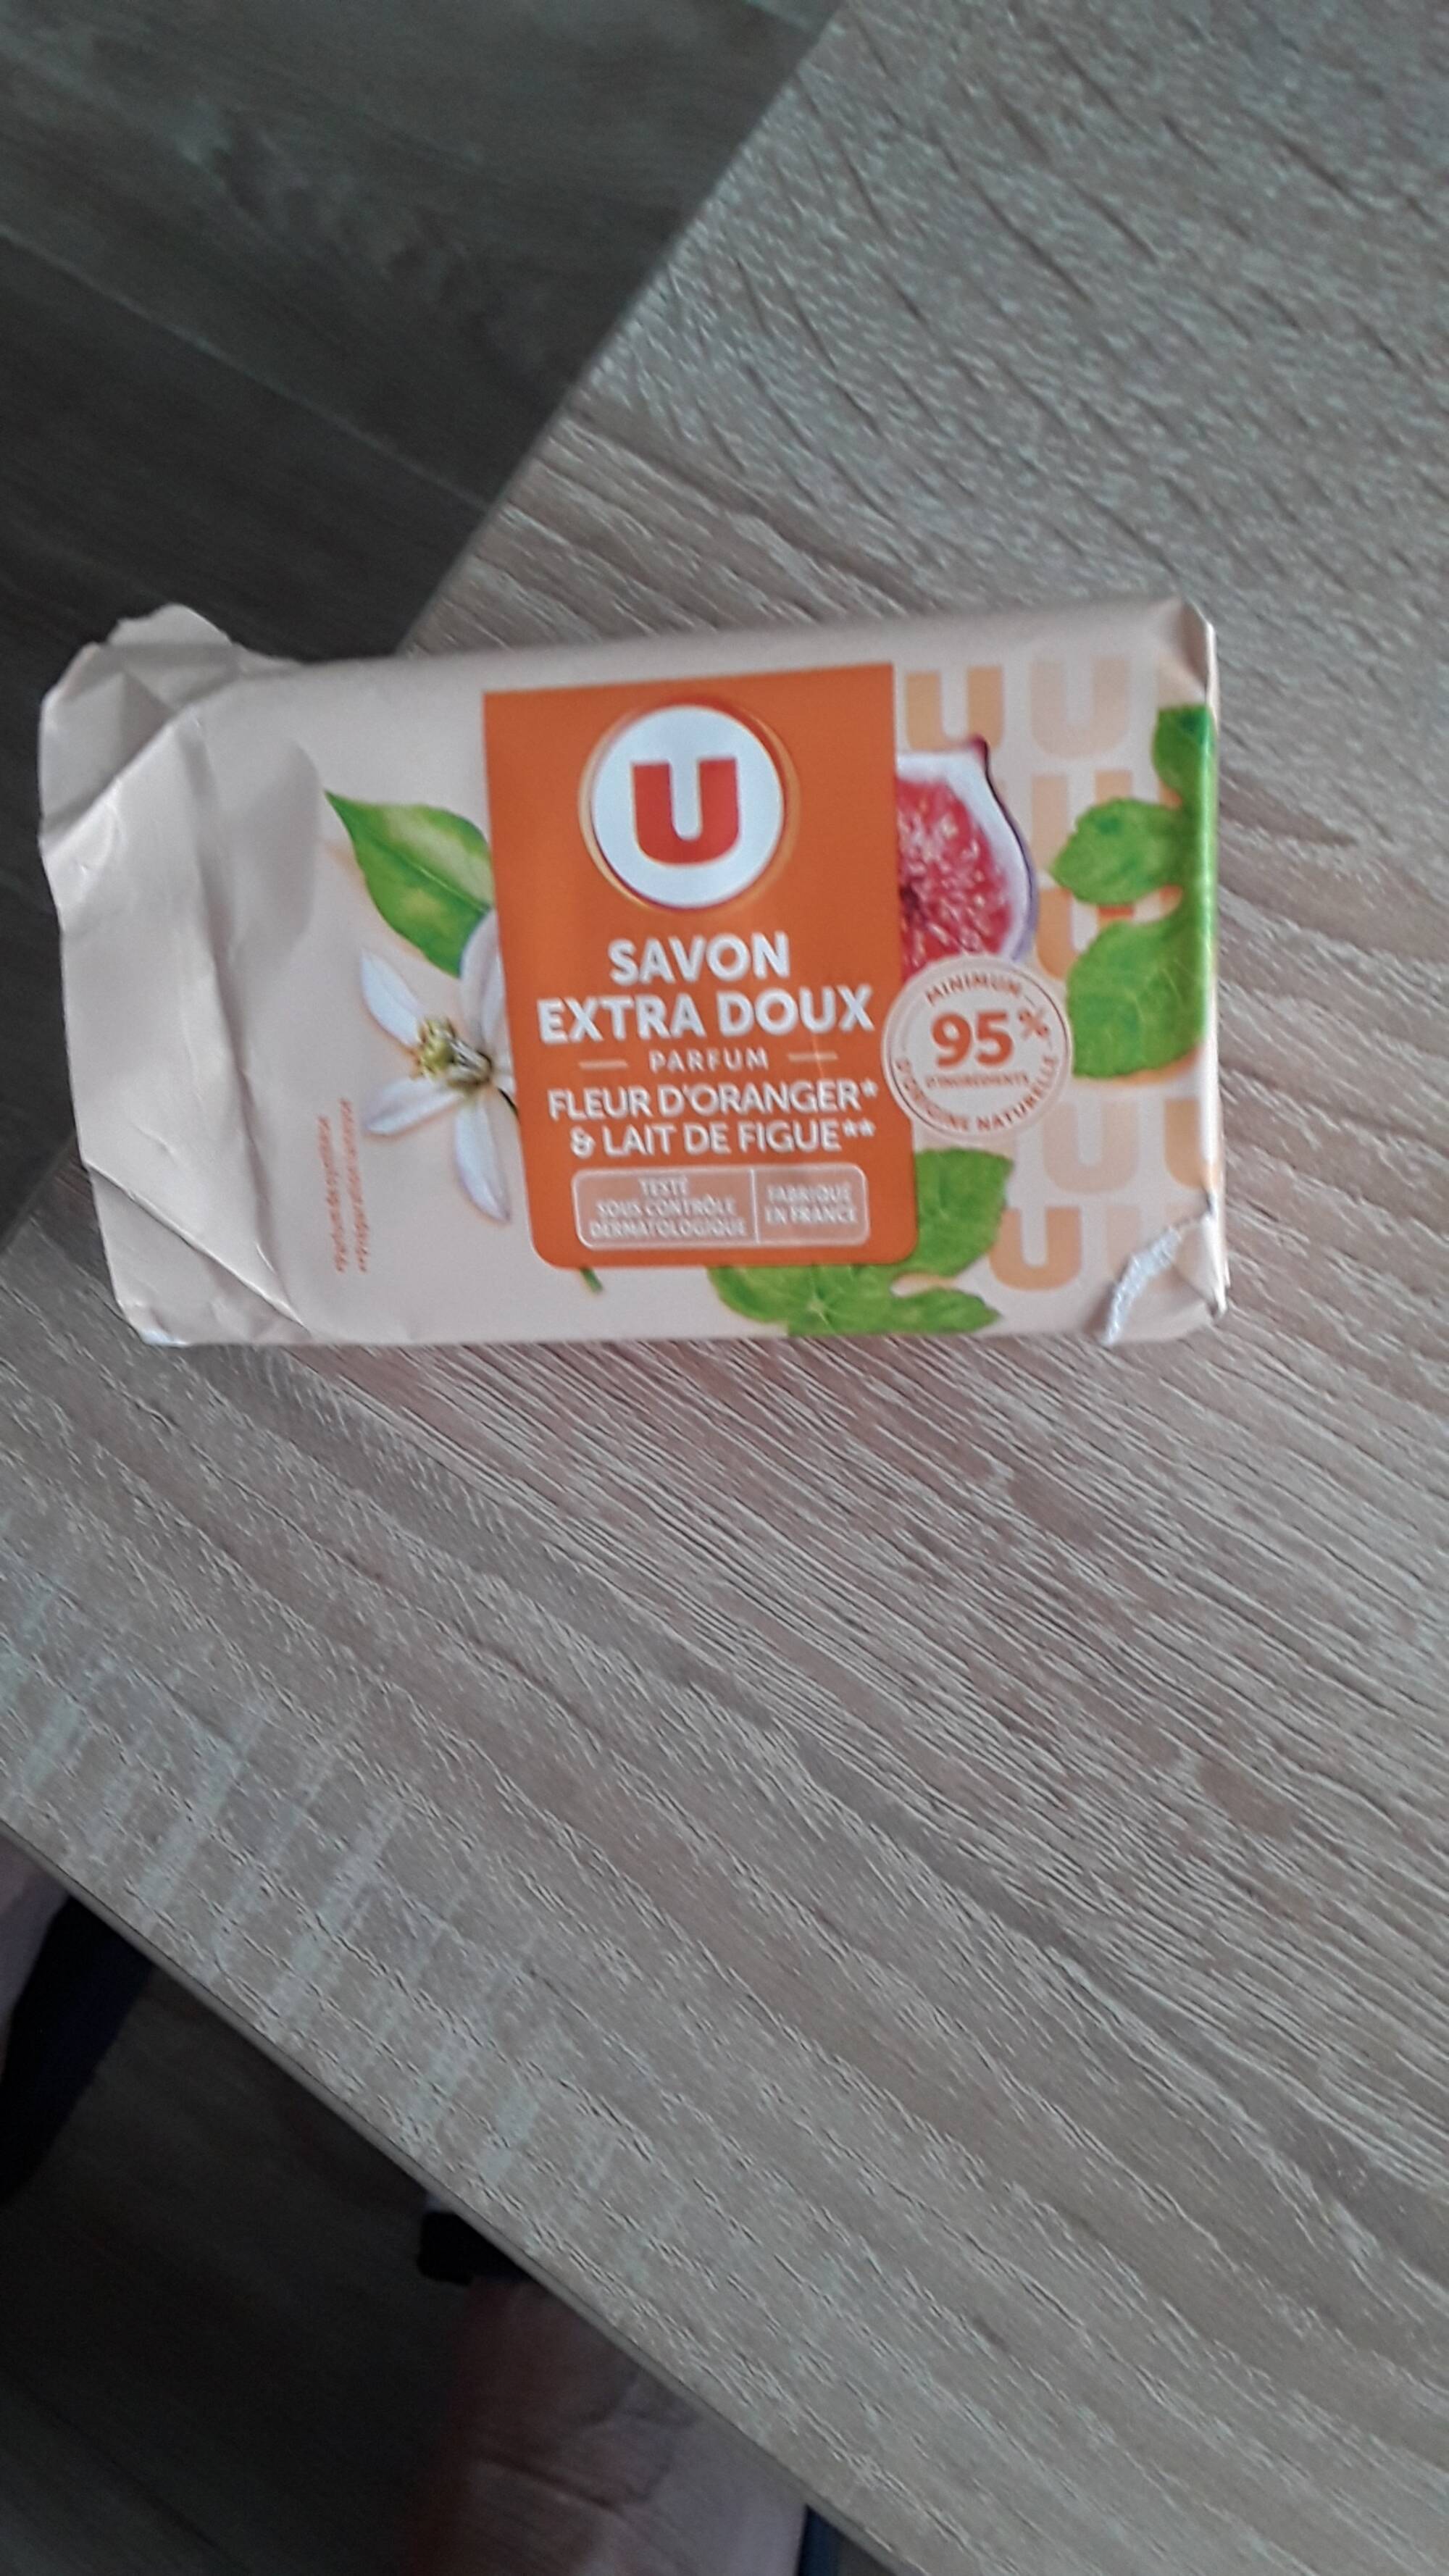 BY U - Savon extra doux fleur d'orange & lait de figue